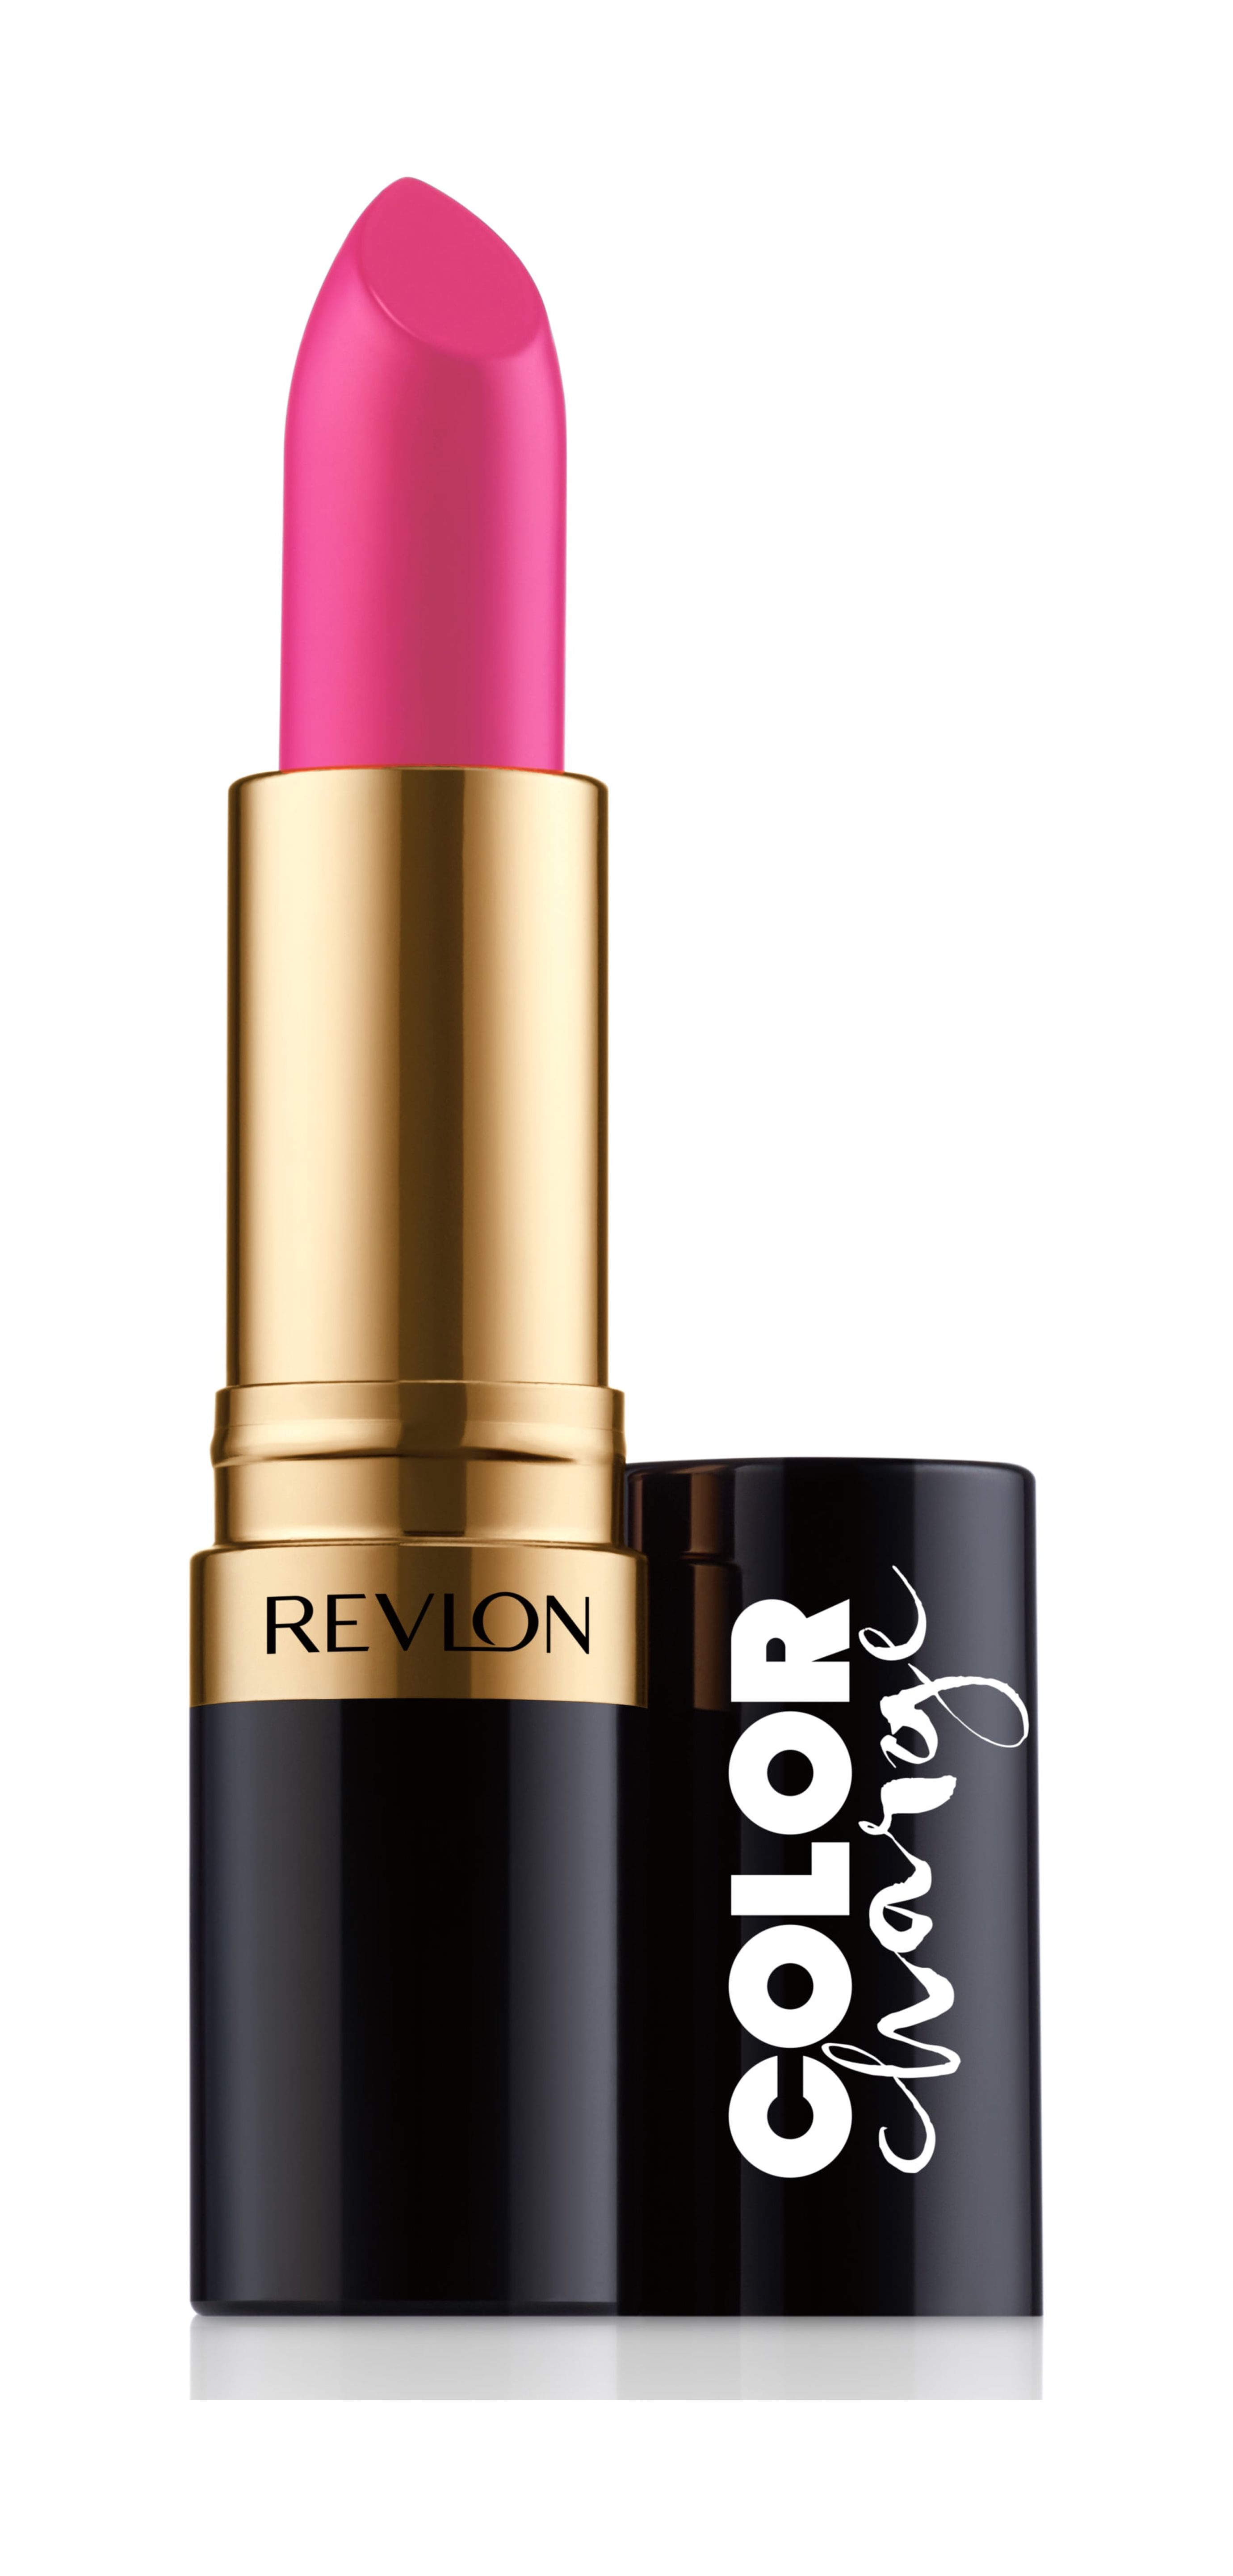 Revlon Color Charge Super Lustrous Lipstick, Pink Punk Matte - image 1 of 3